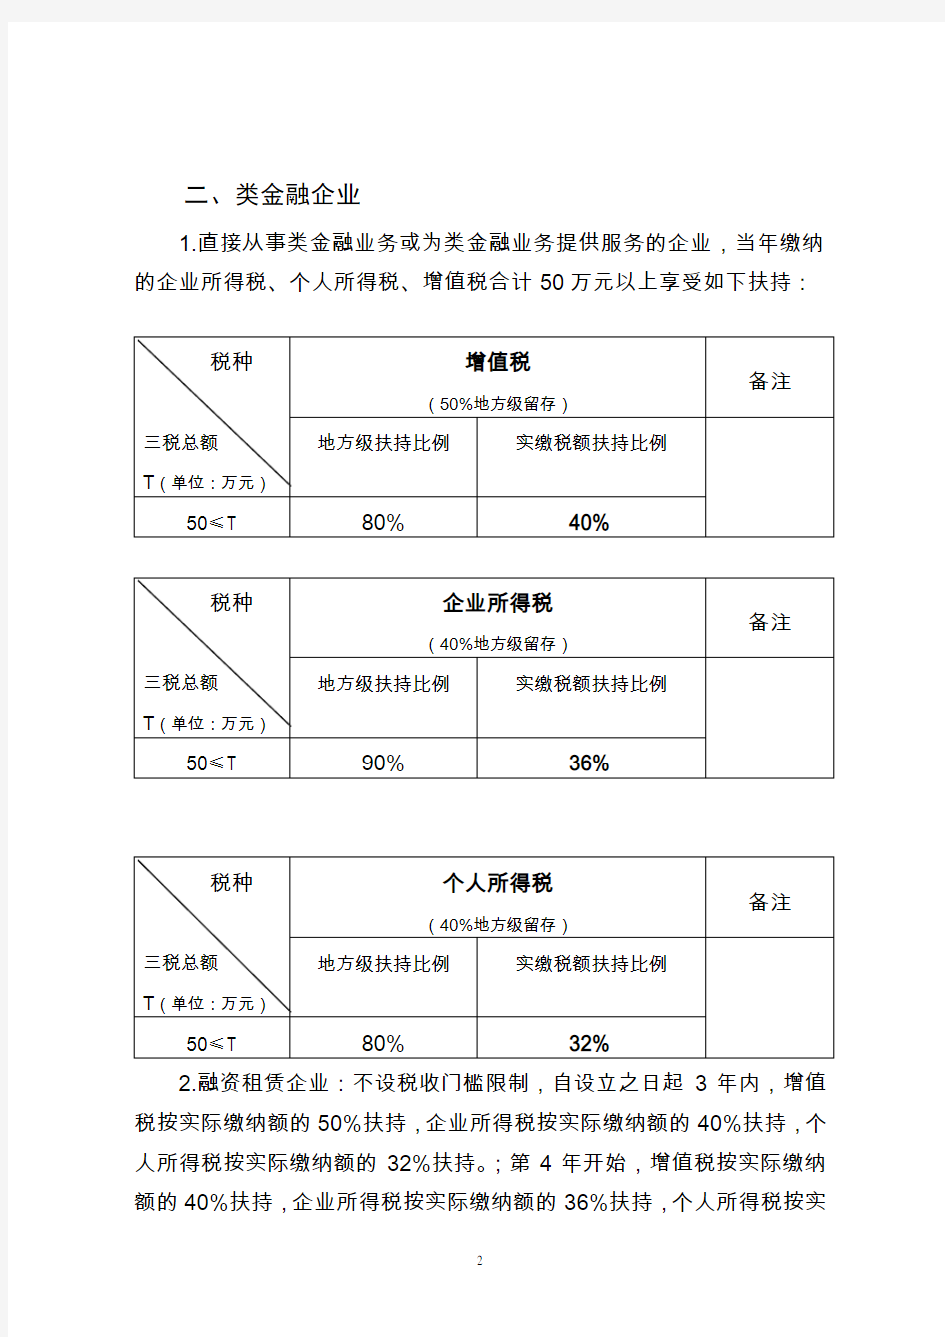 宁波梅山保税港区金融产业发展中心 产业扶持政策2017(1)